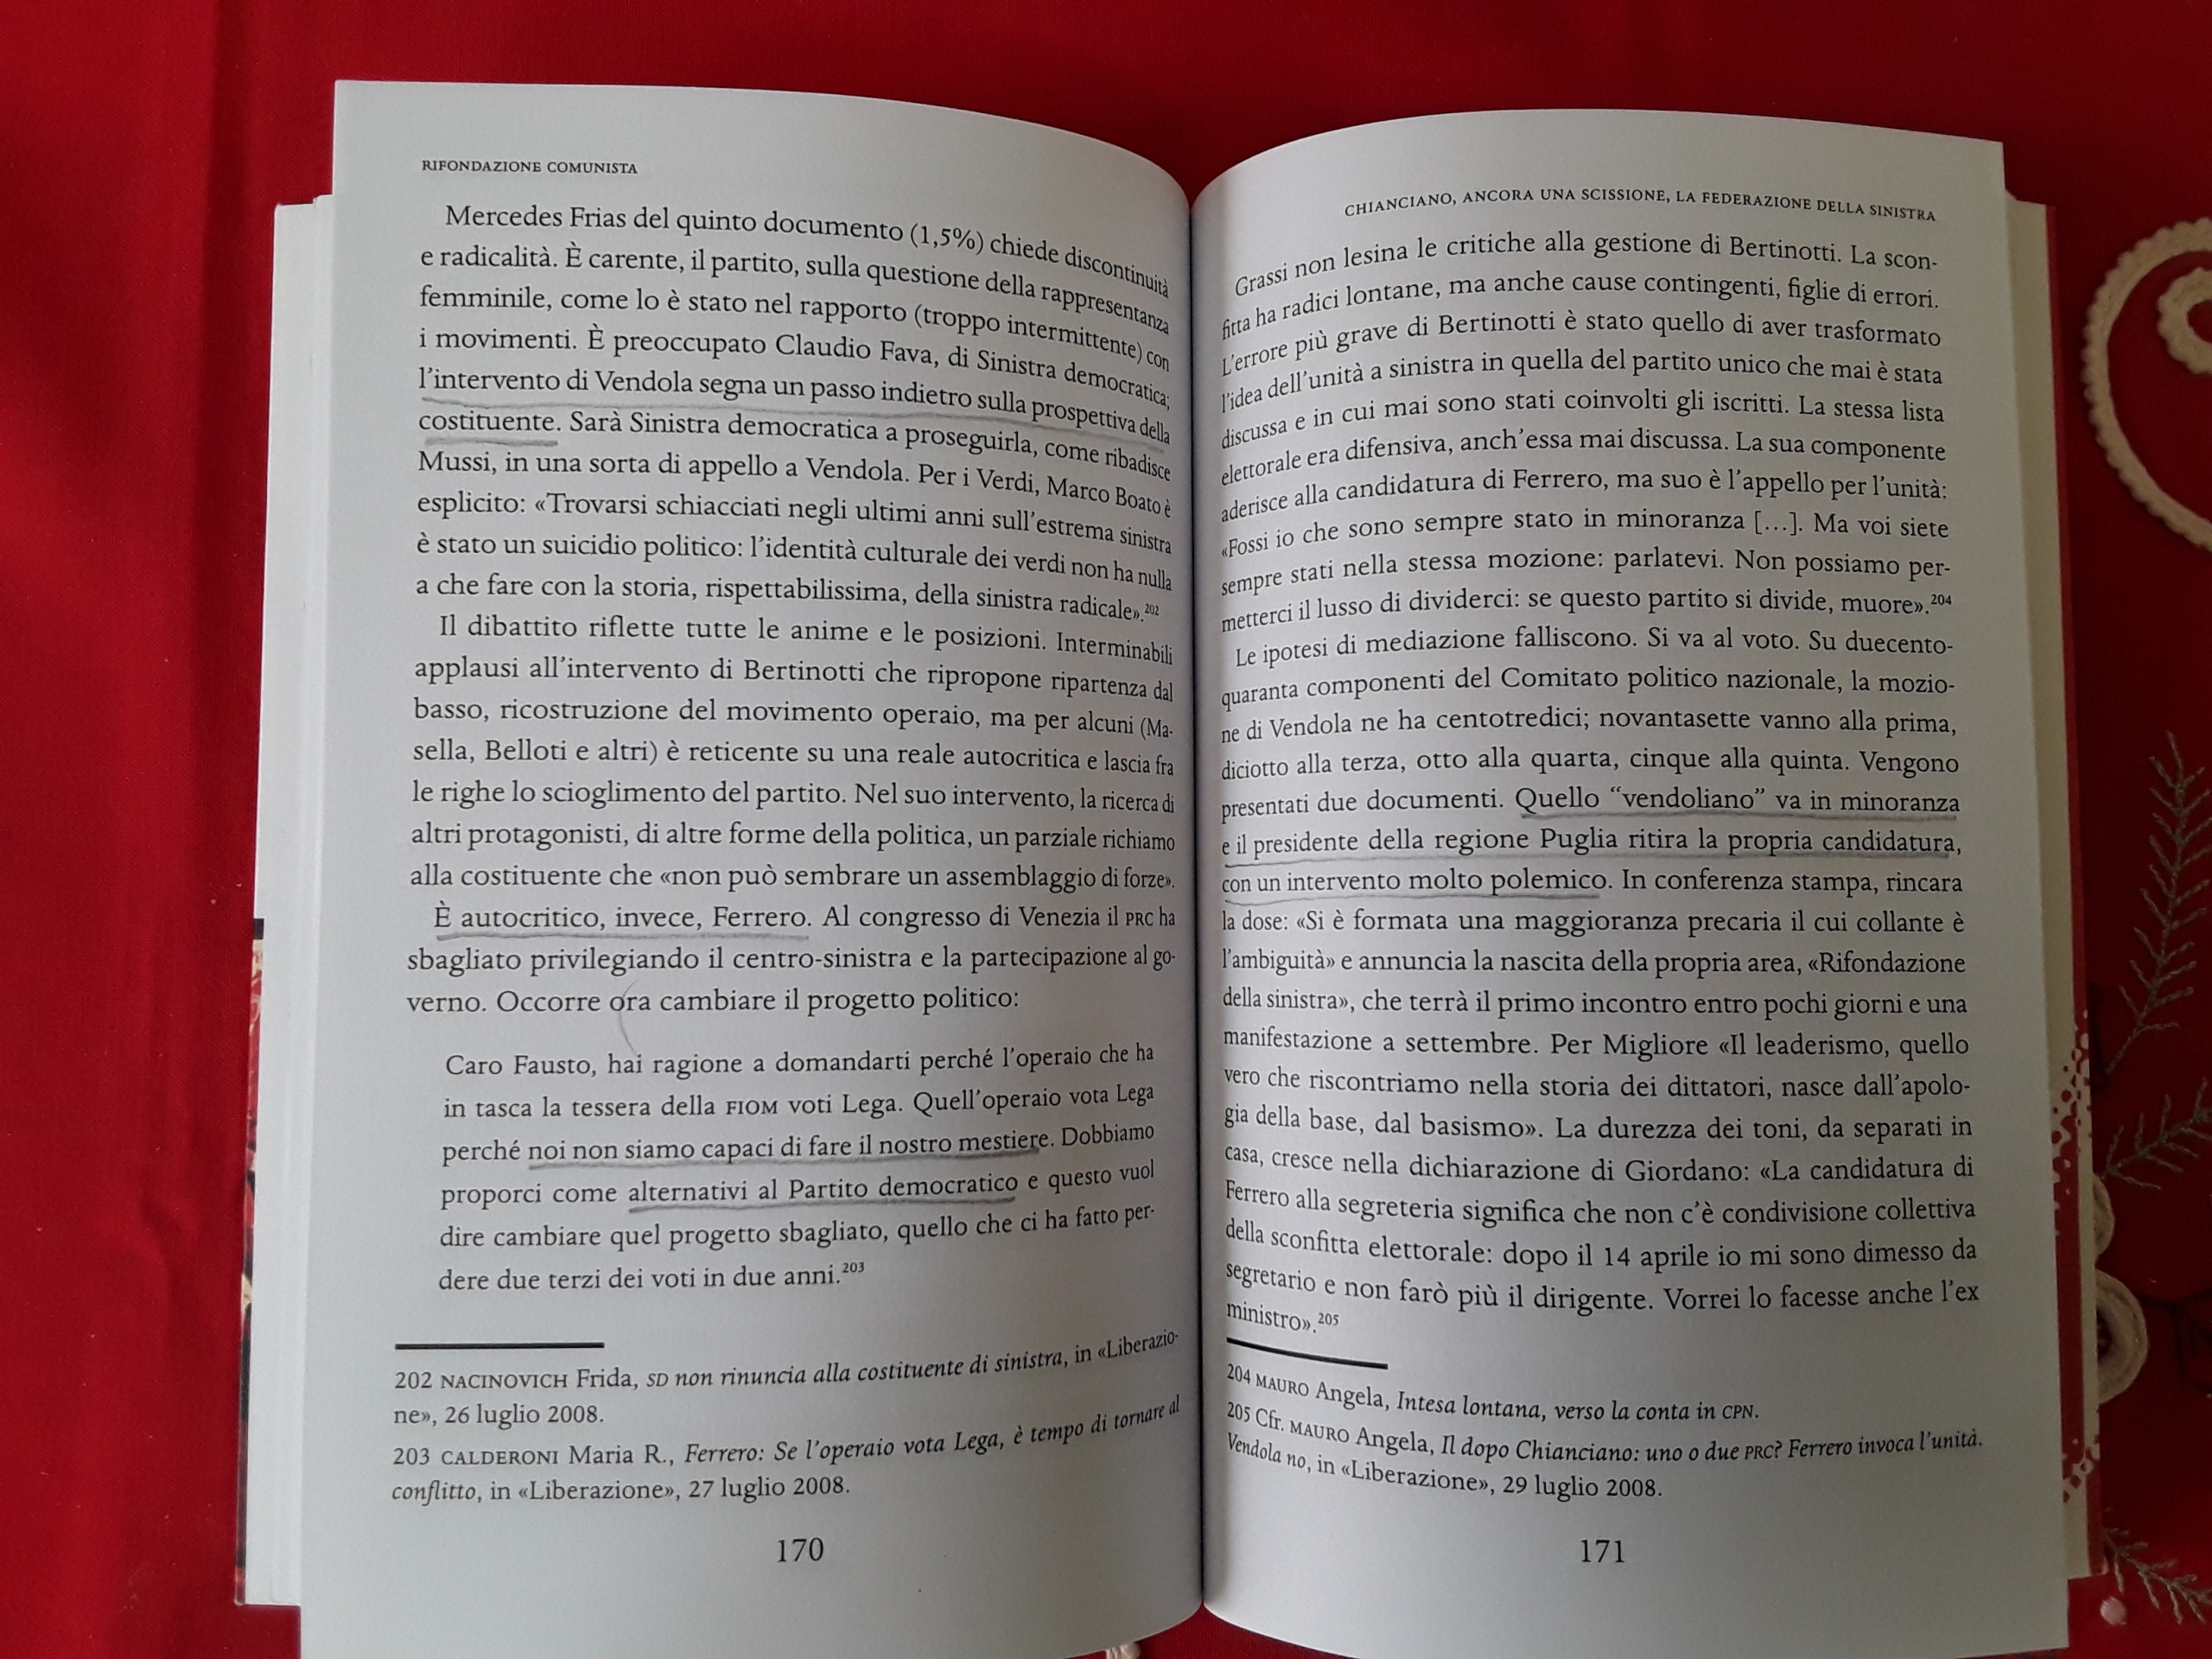 Pagine 170 E 171 del libro Rifondazione Comunista